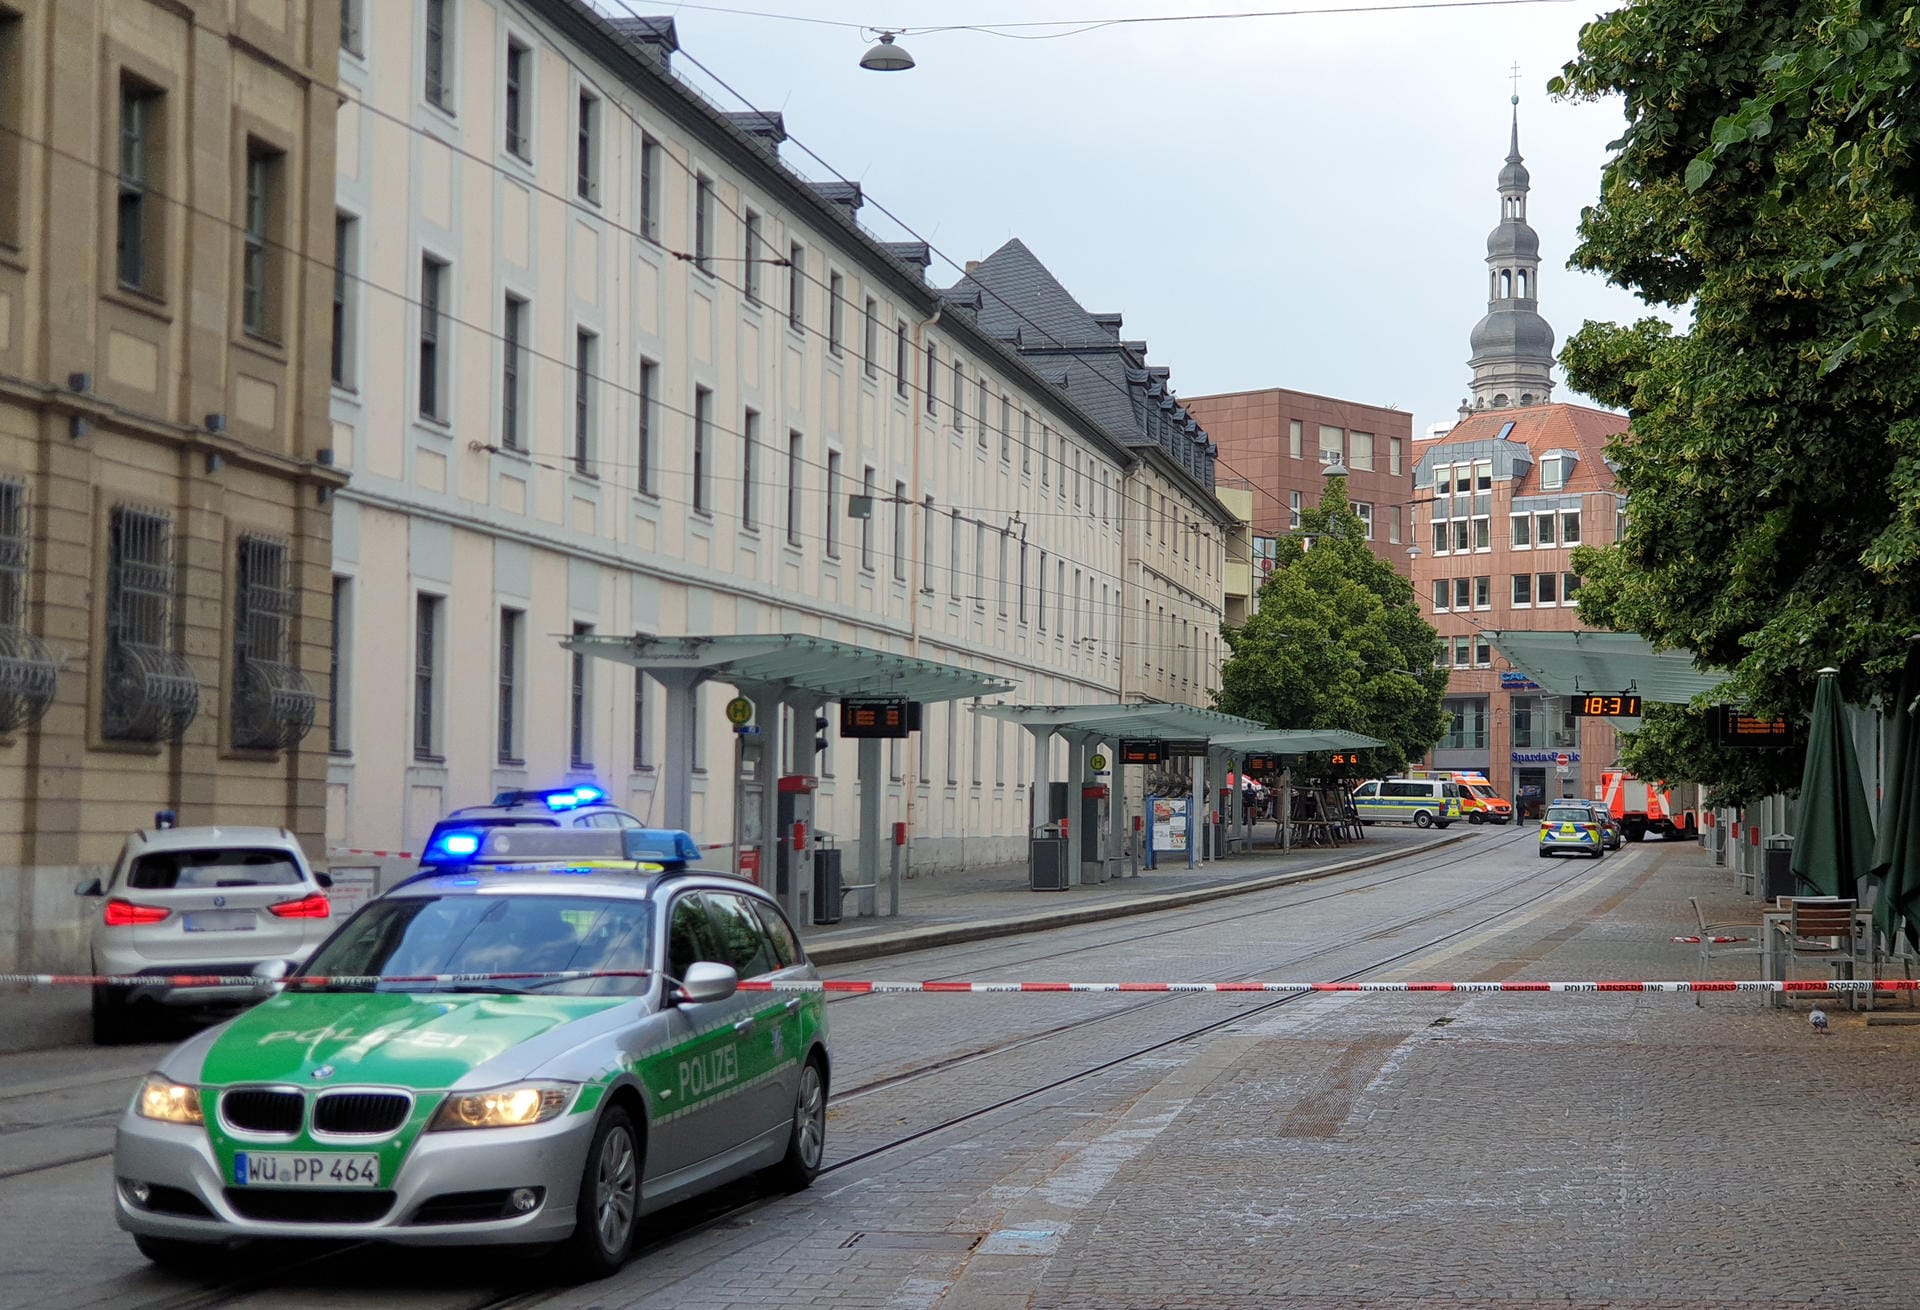 Messerattacke in Würzburg: Die Polizei hat den Tatort weiträumig abgesperrt.